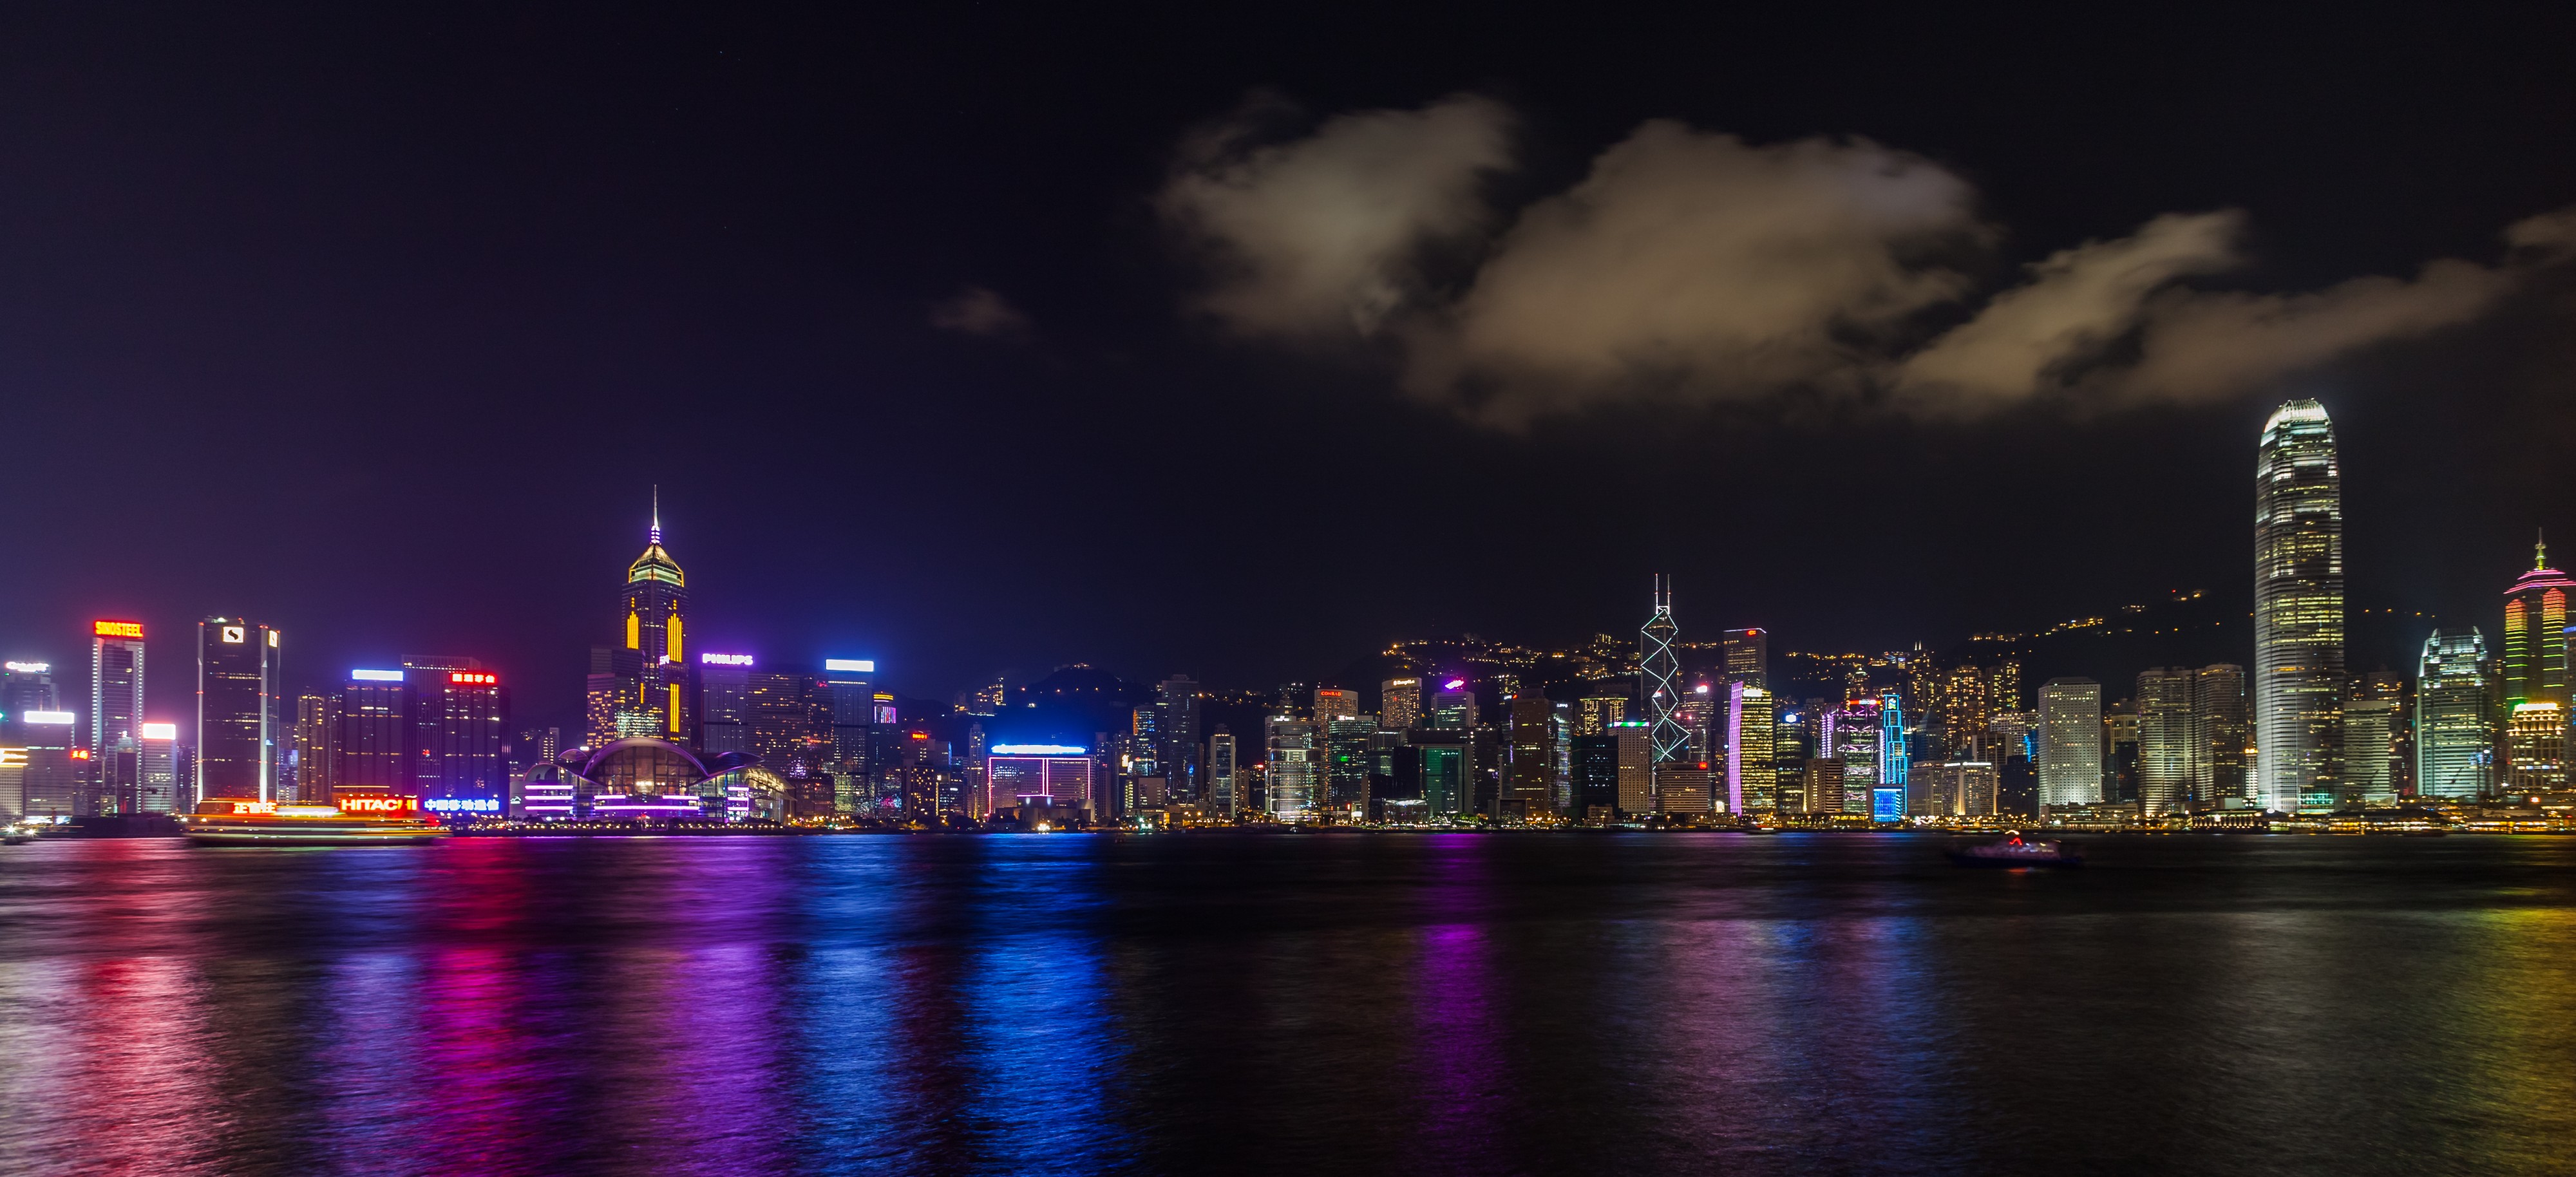 Vista del Puerto de Victoria desde Kowloon, Hong Kong, 2013-08-11, DD 16